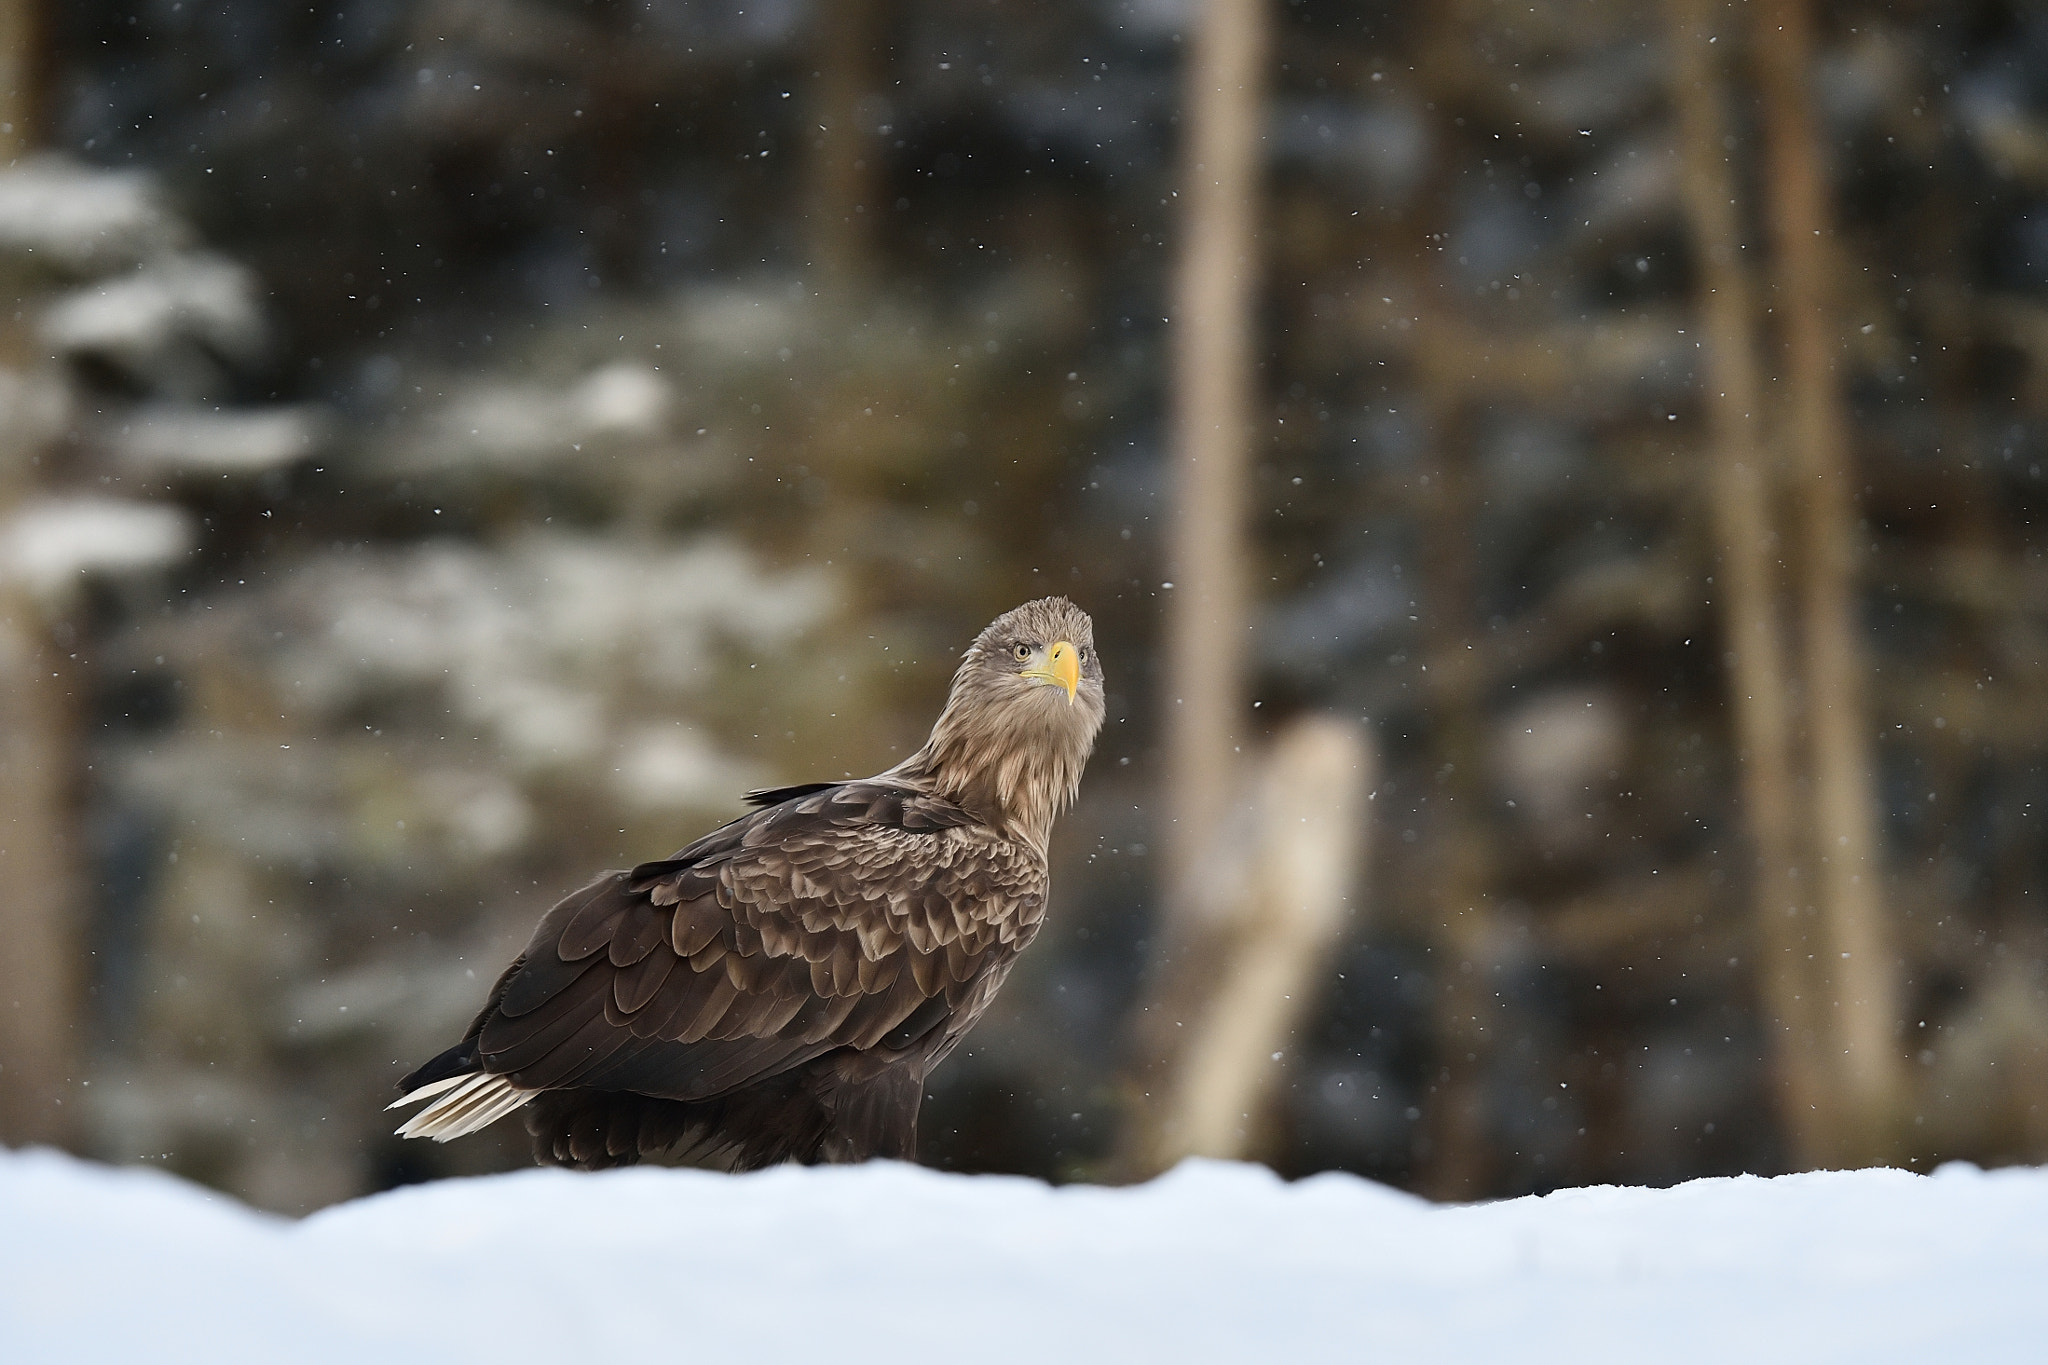 Nikon D4S sample photo. Eagle on snow with snowfall photography